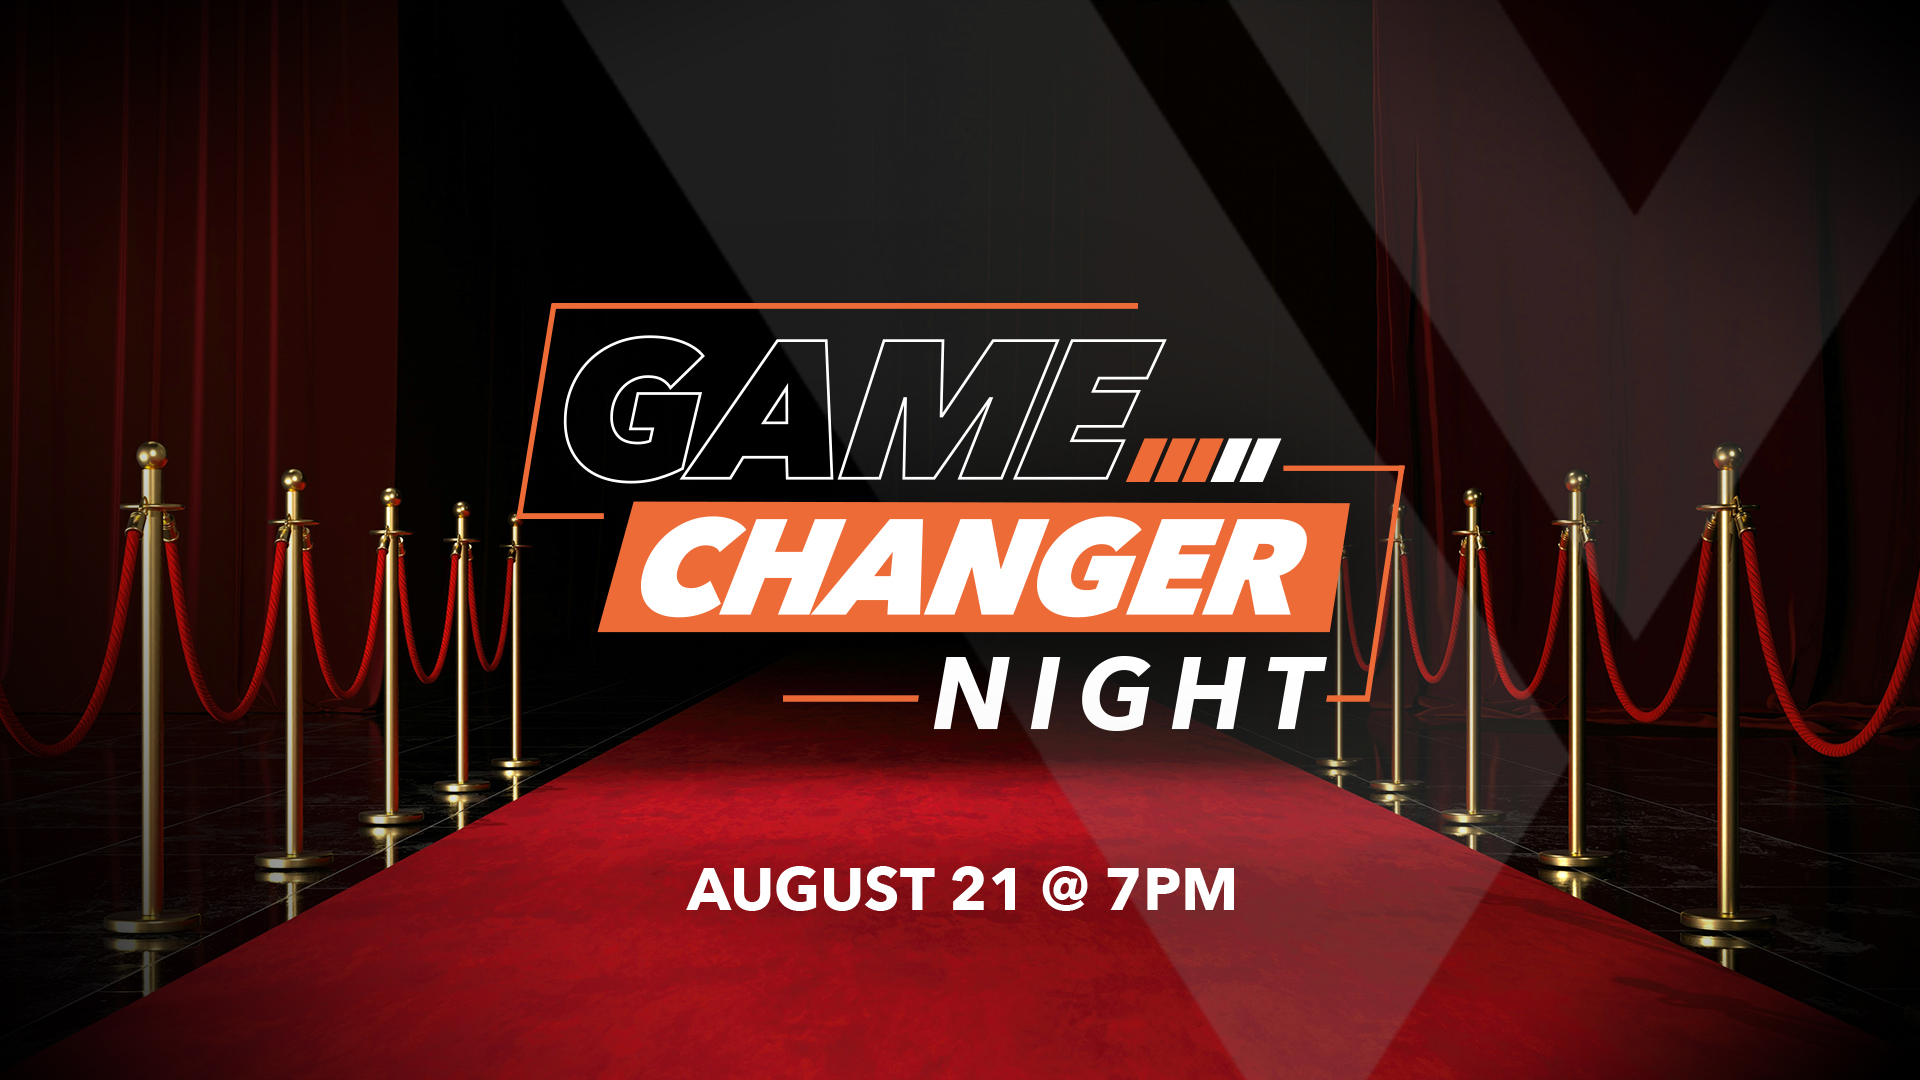 RSVP for Gamechanger Night  - August 21